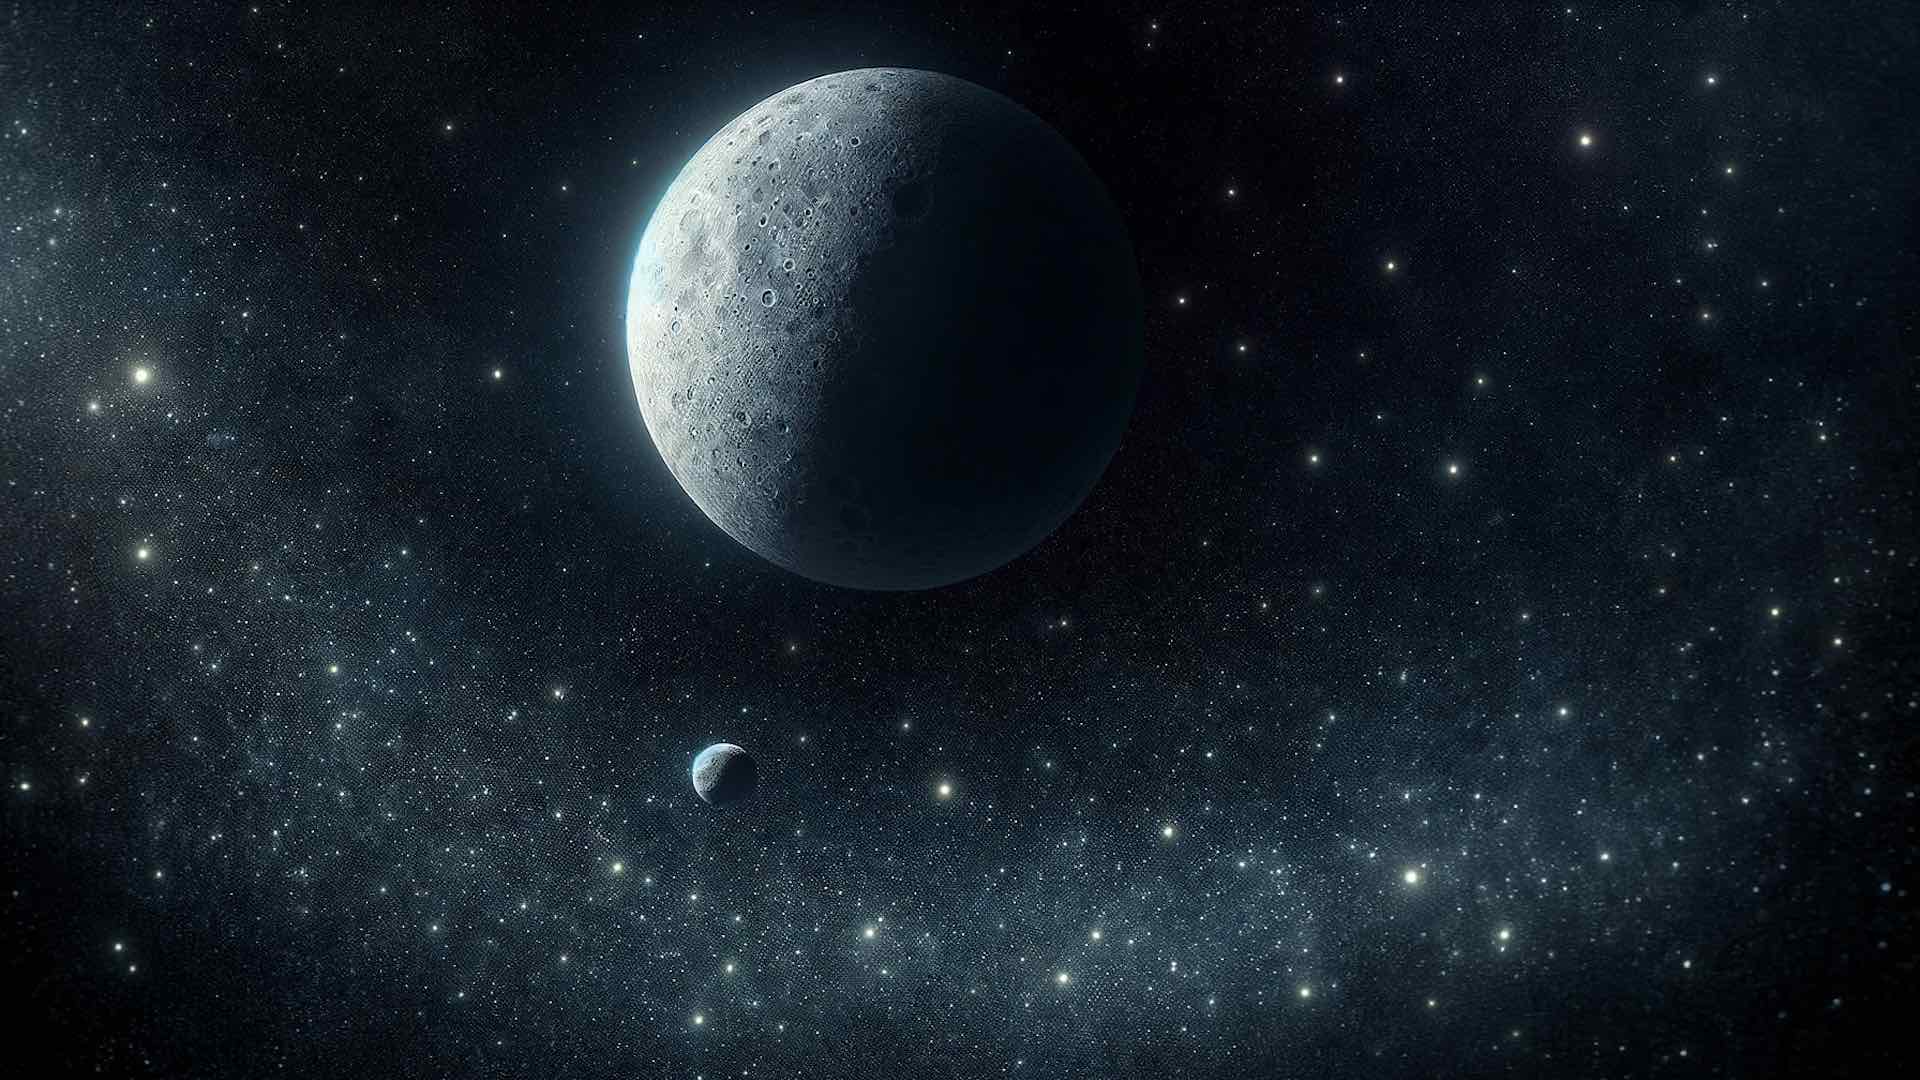 Le vaisseau spatial Lucy de la NASA dévoile une mini-lune en orbite autour de l'astéroïde Dinkinesh